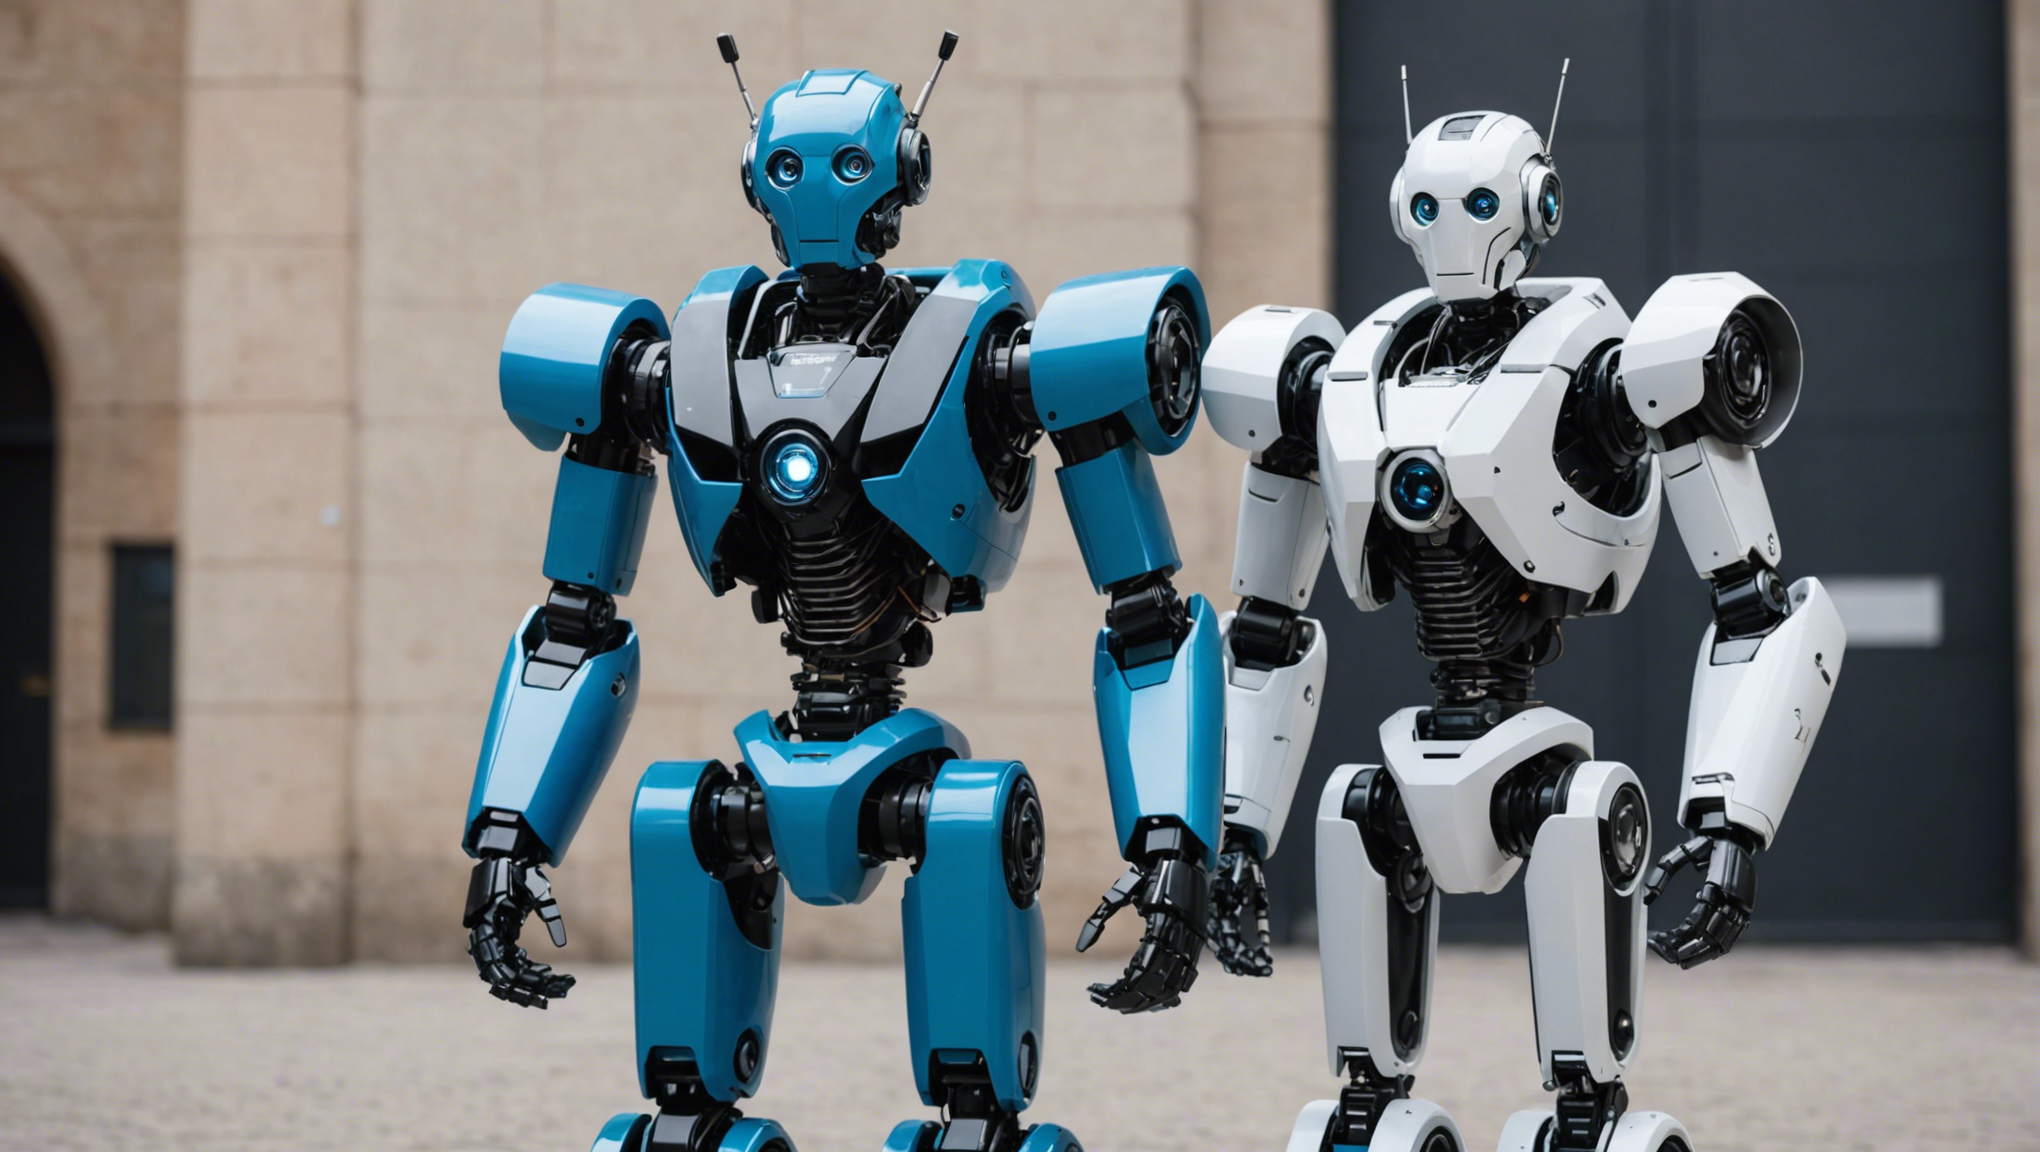 découvrez les dernières nouveautés en ligne chez generation robots. retrouvez une sélection de robots innovants et d'accessoires high-tech pour la robotique.